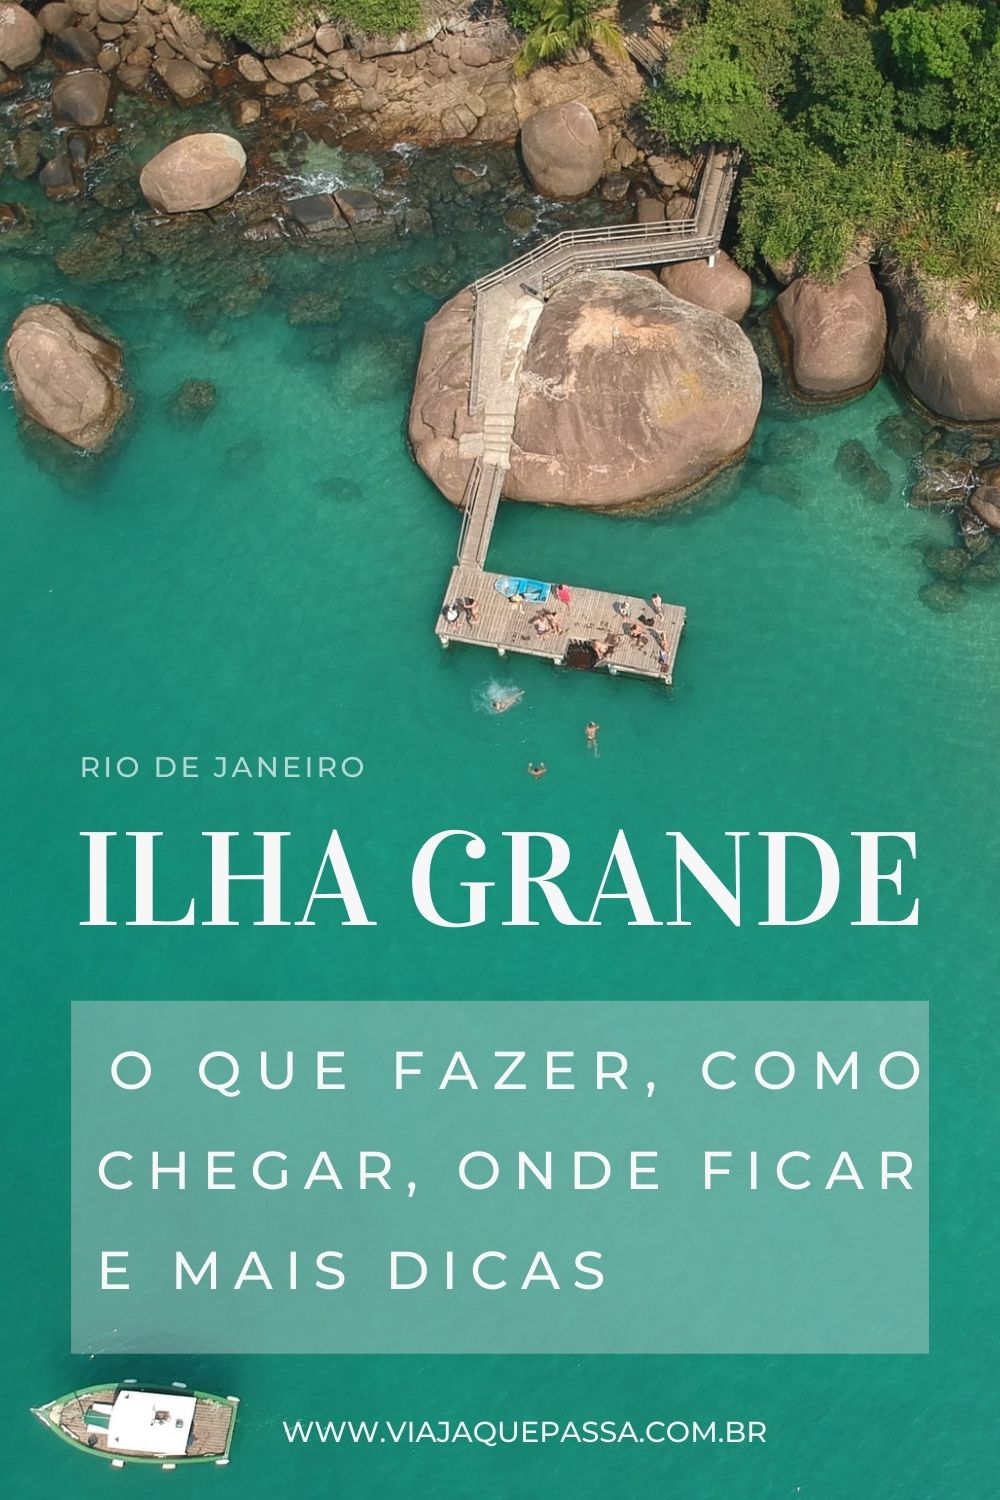 Roteiro em Ilha Grande, Rio de Janeiro